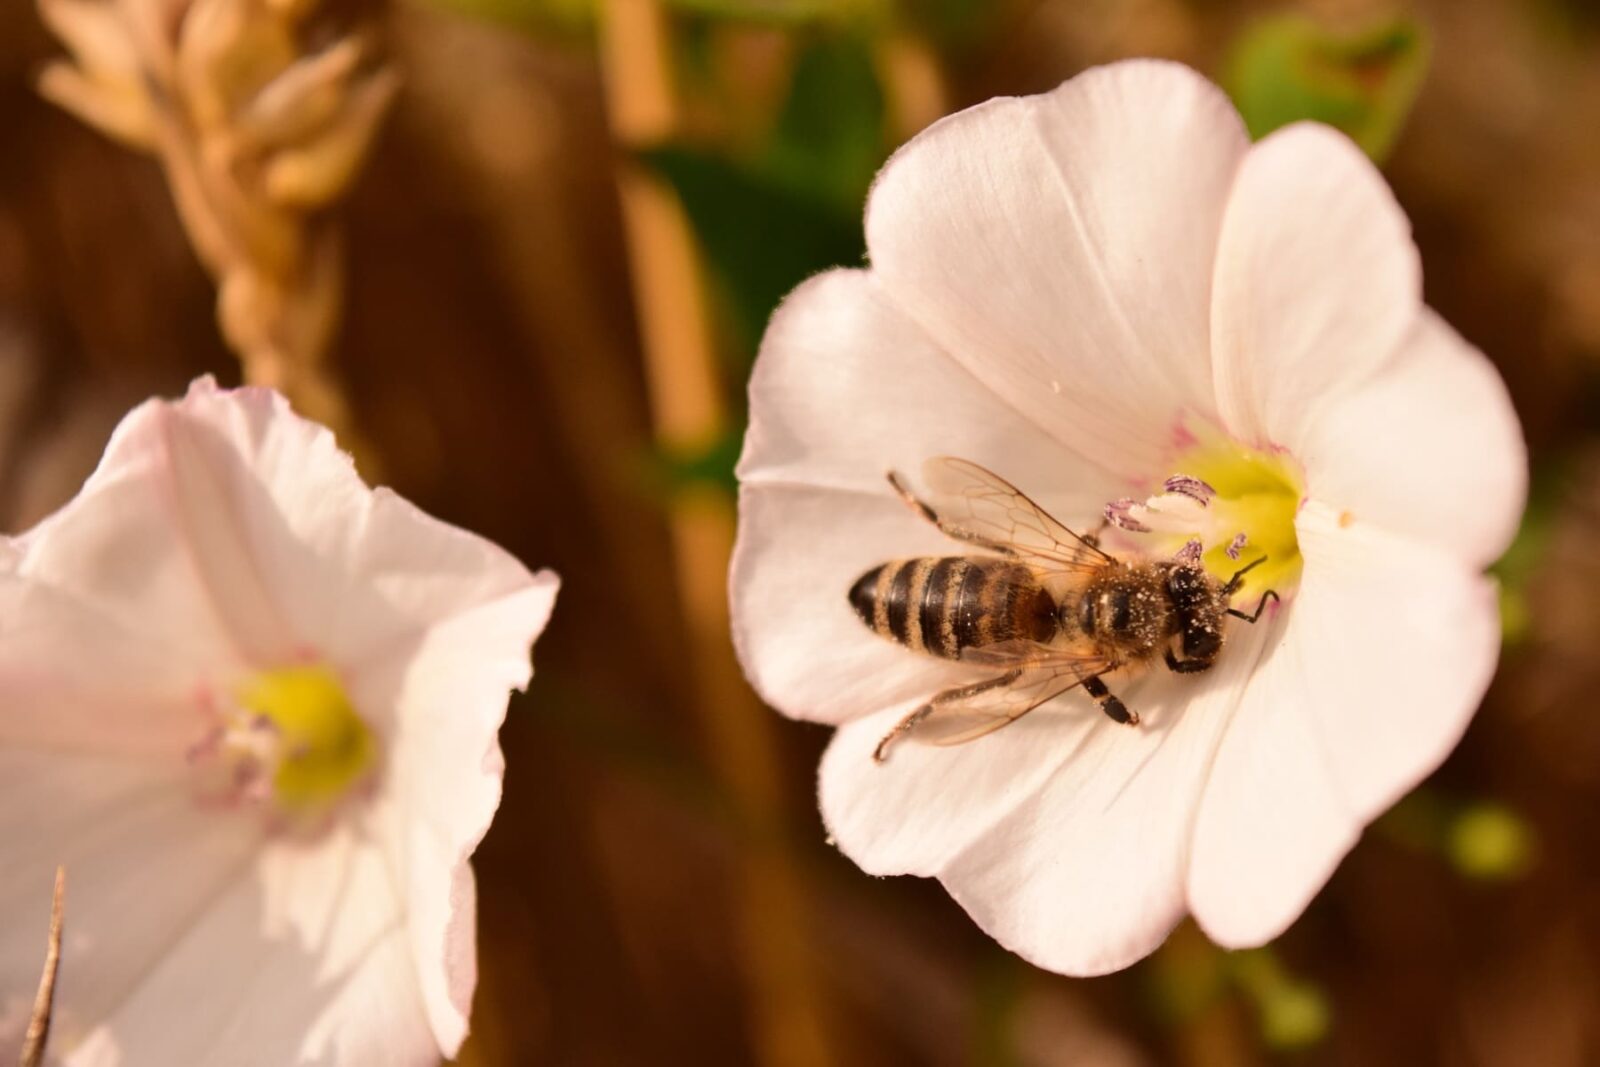 comment polliniser correctement dans une serre de jardin